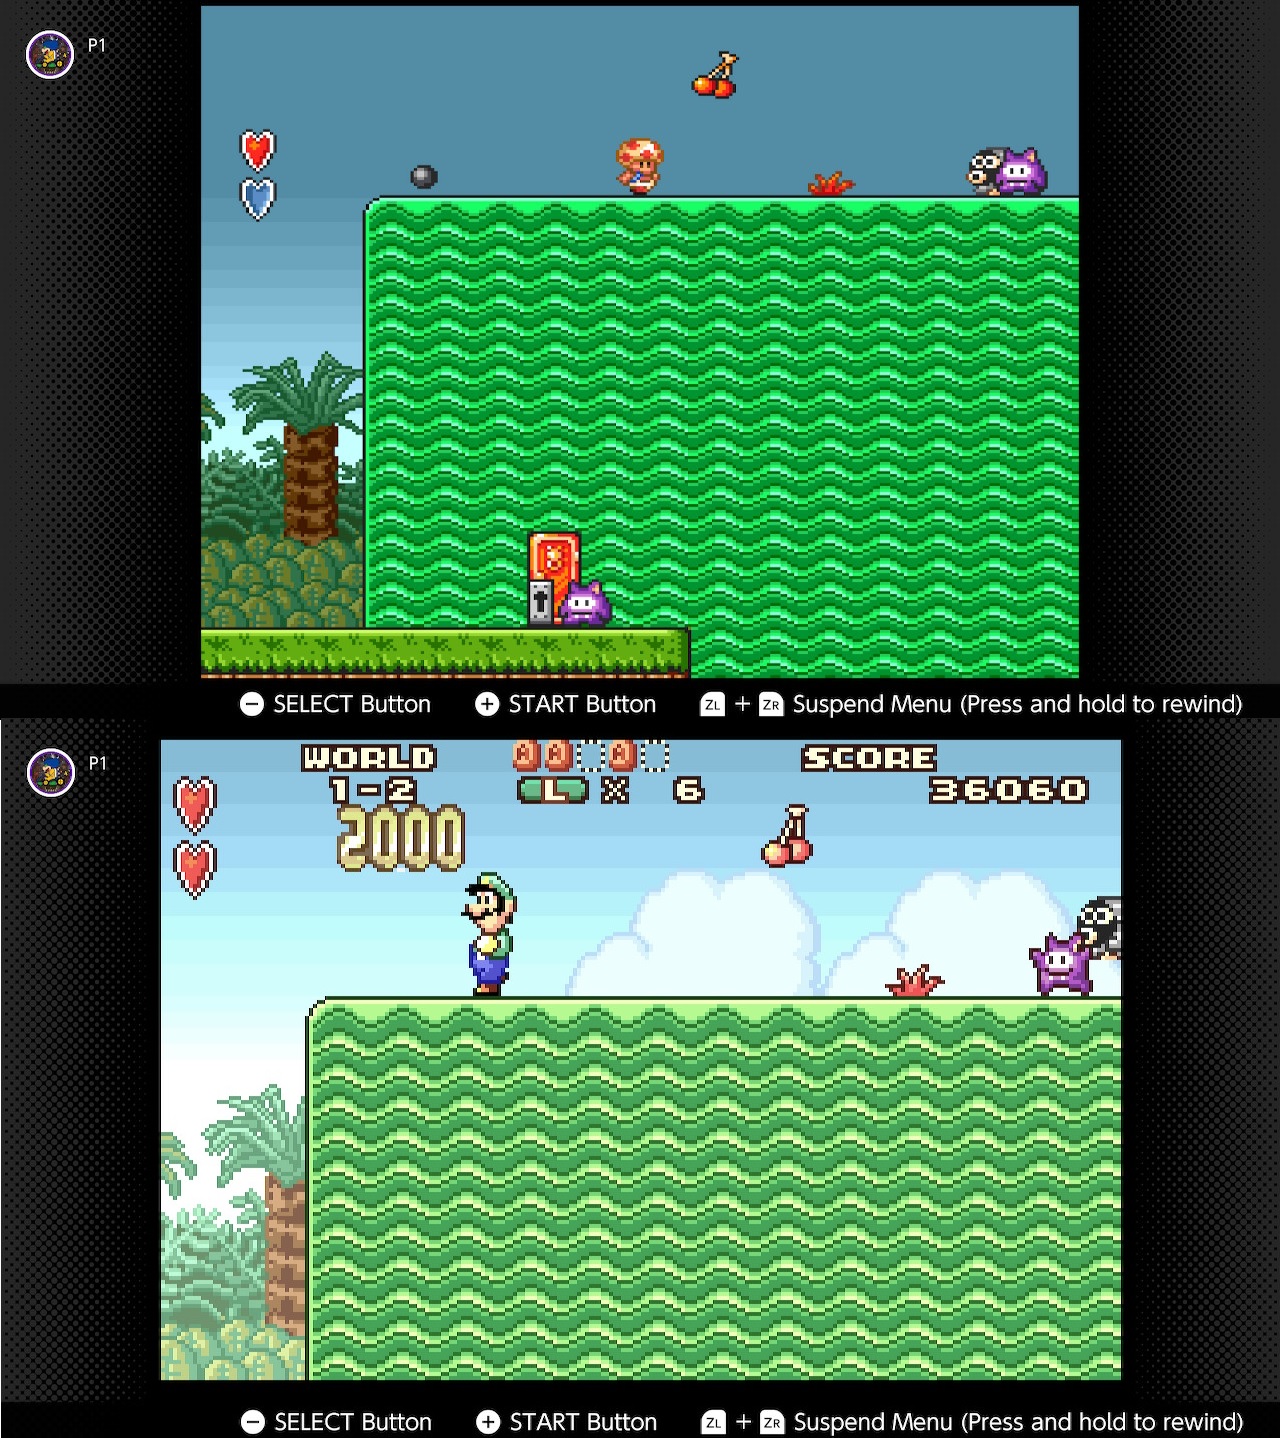 Play SNES Super Mario Bros. Advance 2 : Super Mario Bros. 3 Online in your  browser 